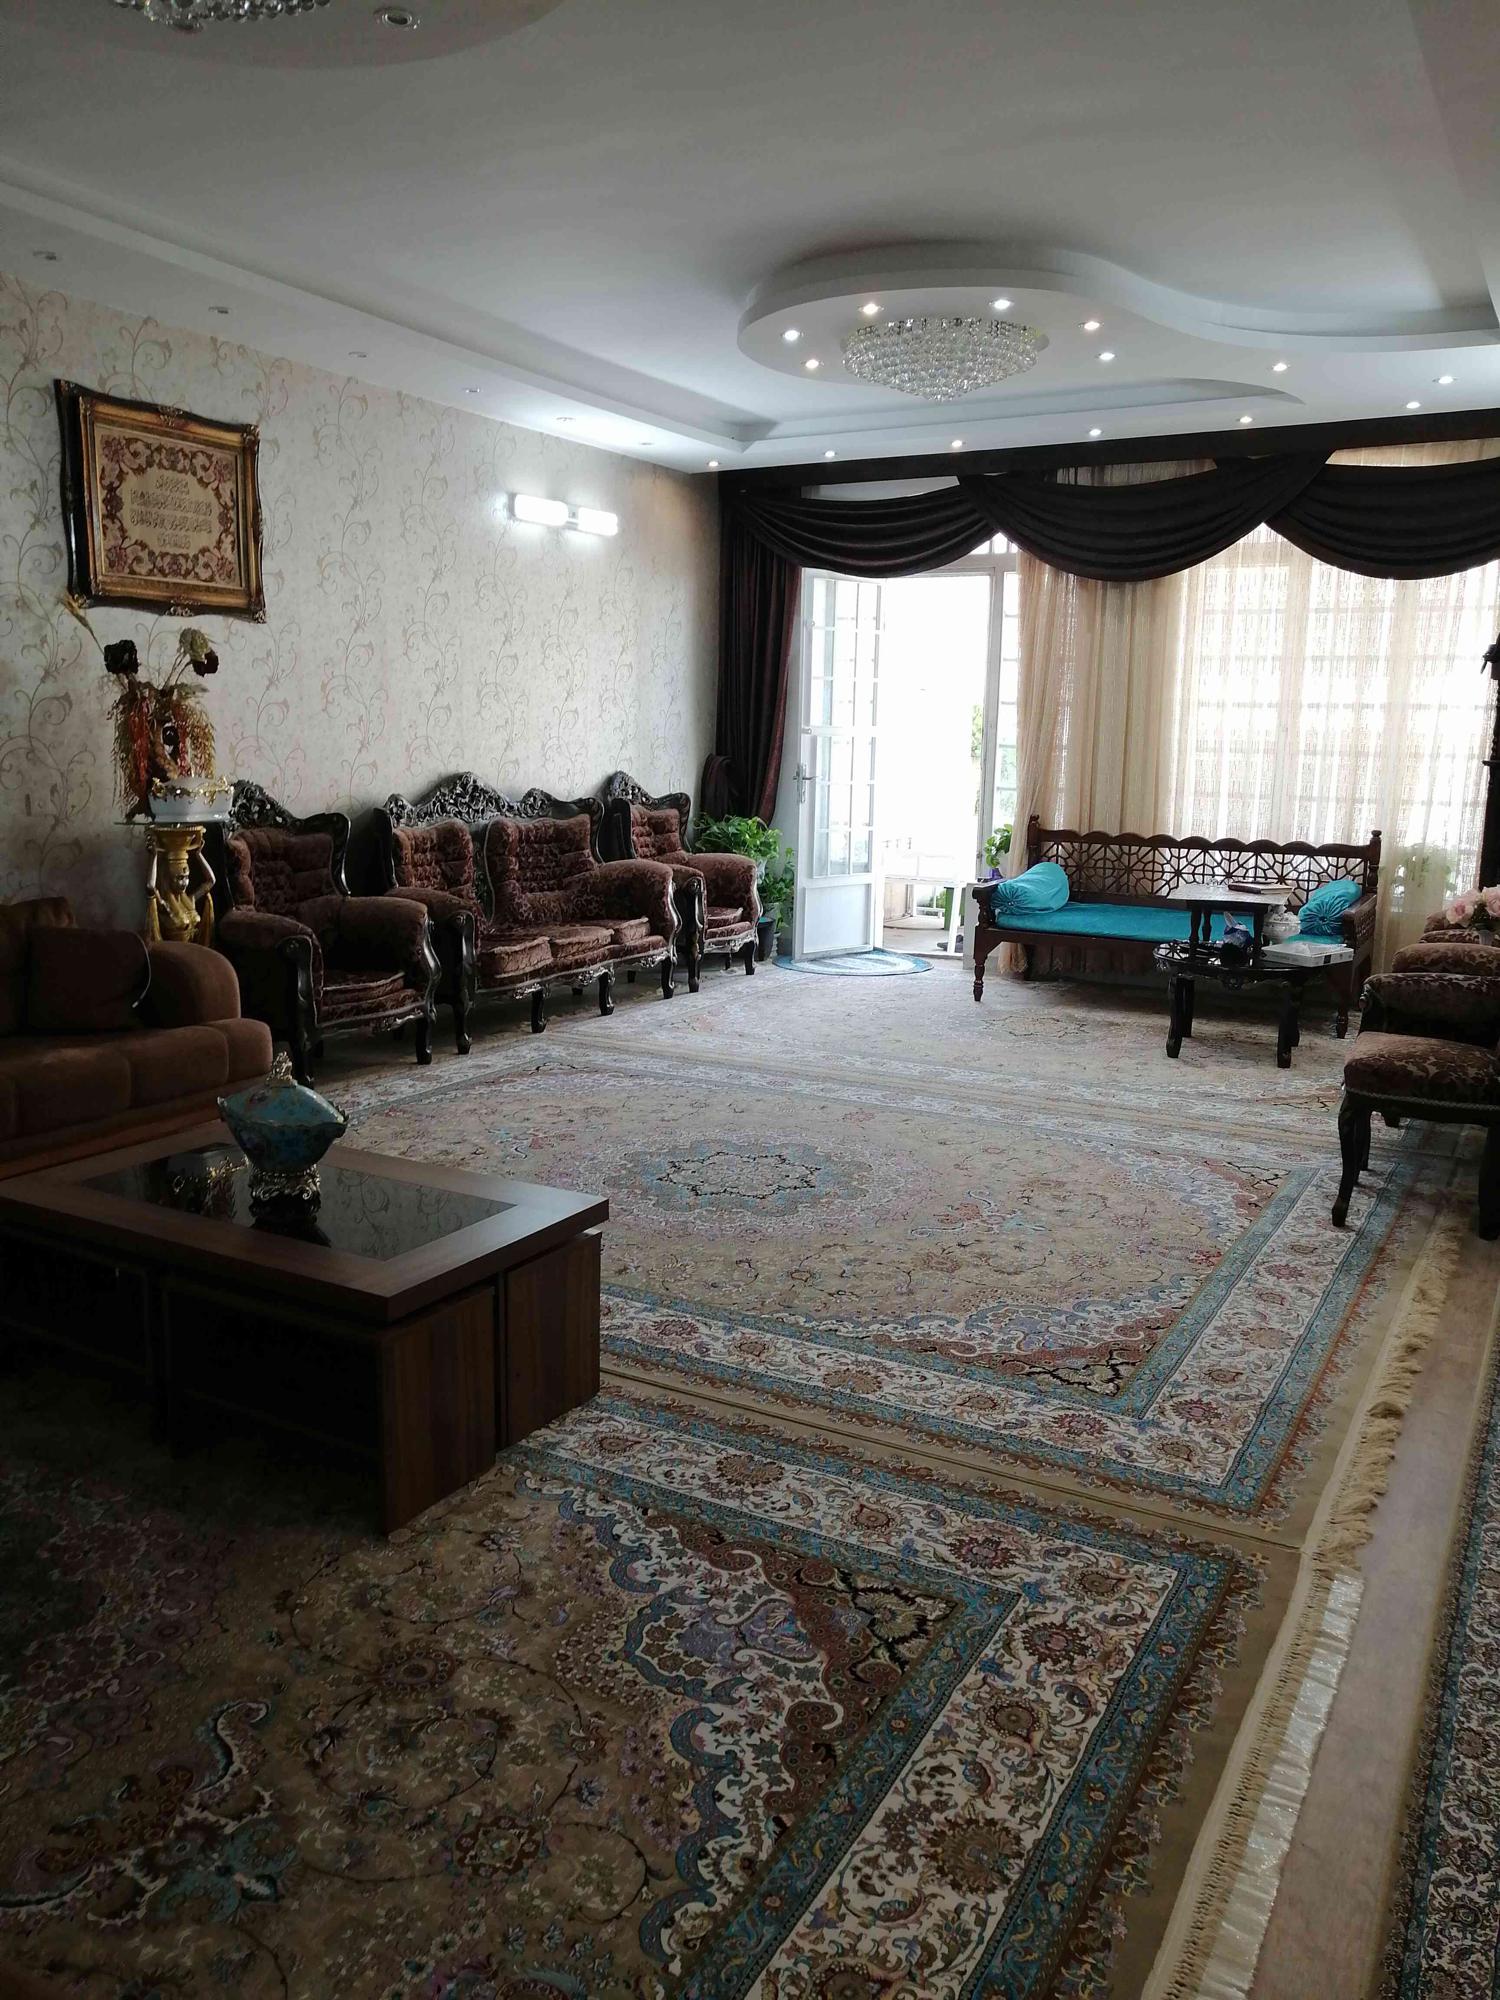 فروش منزل دربست ویلایی شهرک بهشتي 